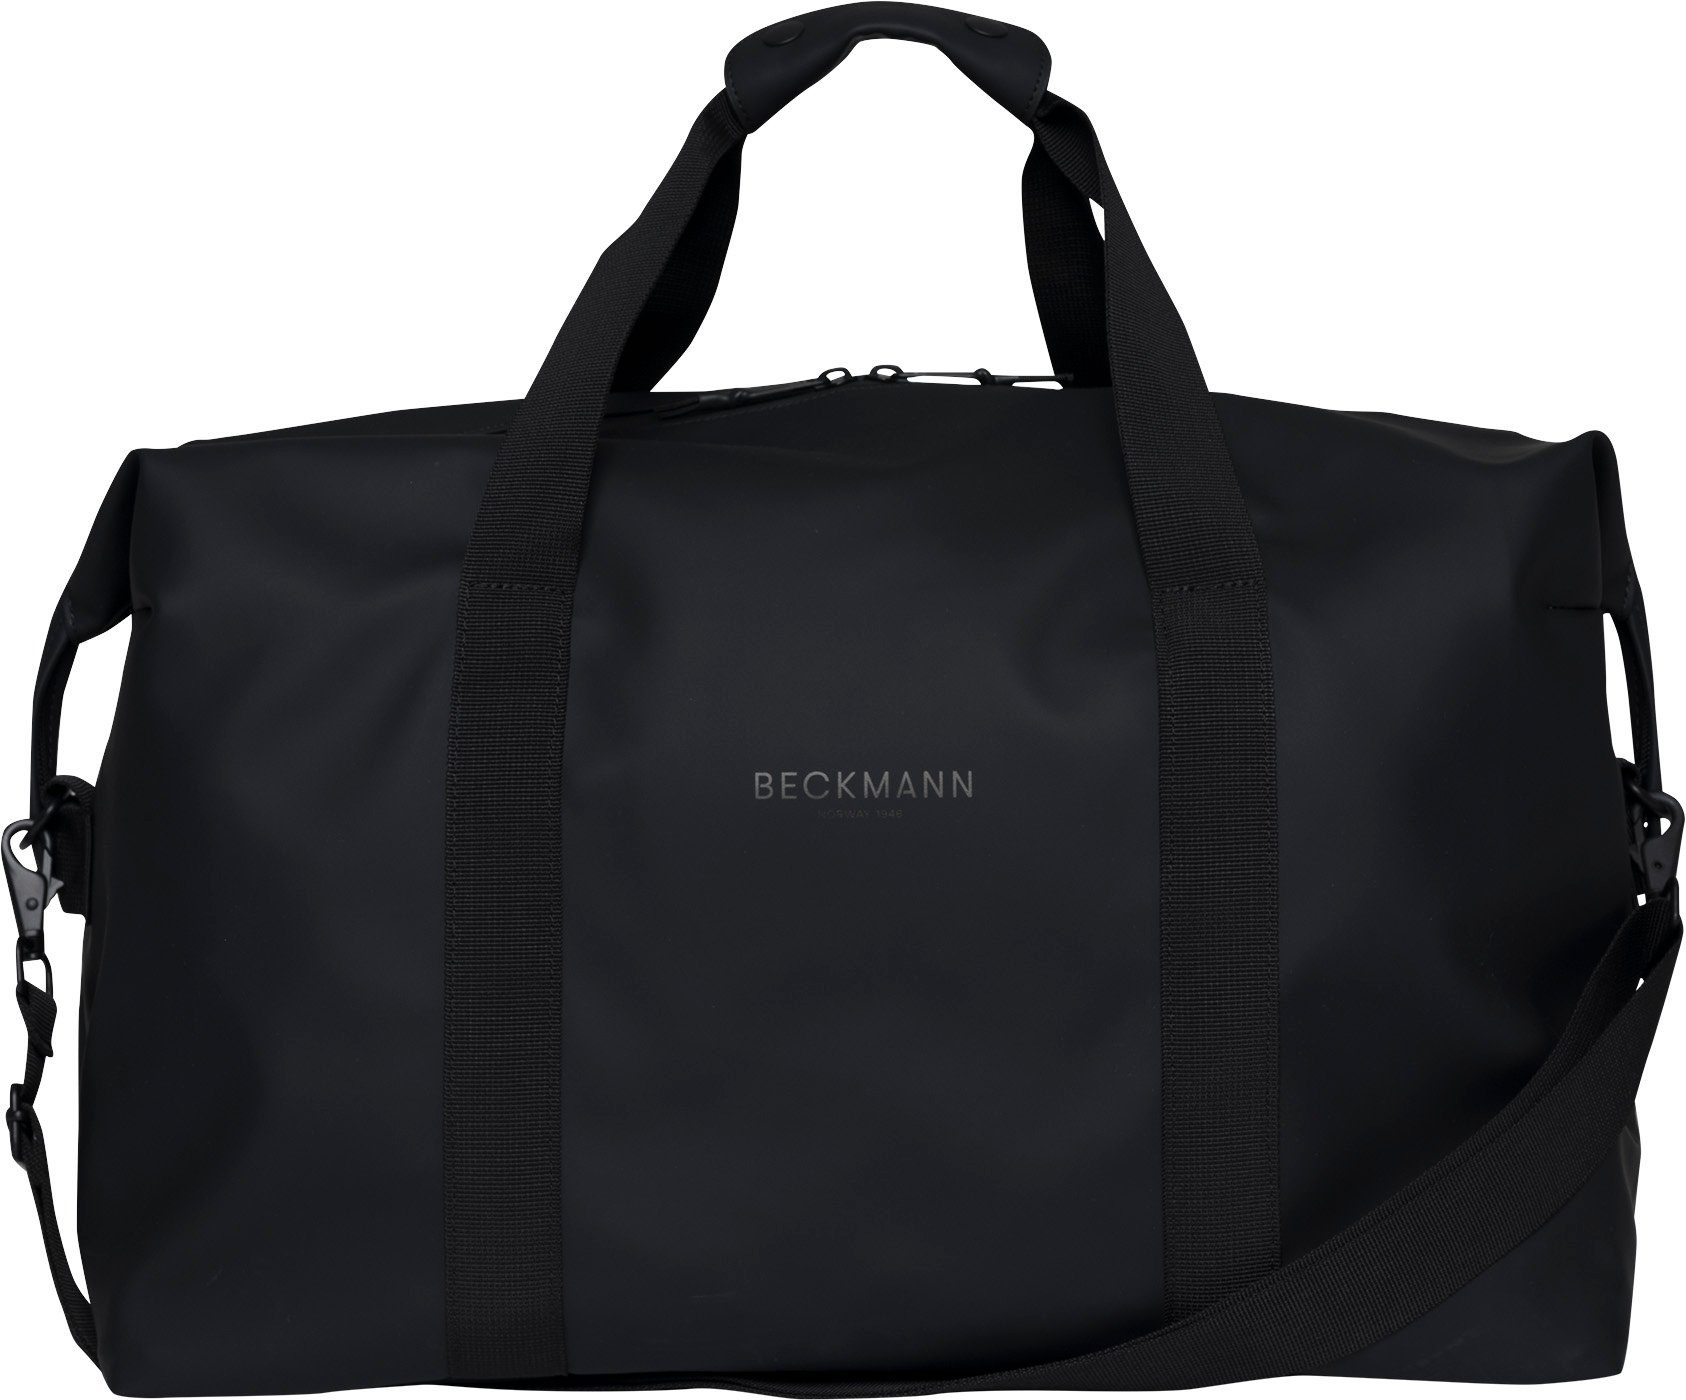 Beckmann Reisetasche Sporttasche Street Weekend Bag 48H Black (1 Stück), Reisetasche, Reisegepäck | Reisetaschen